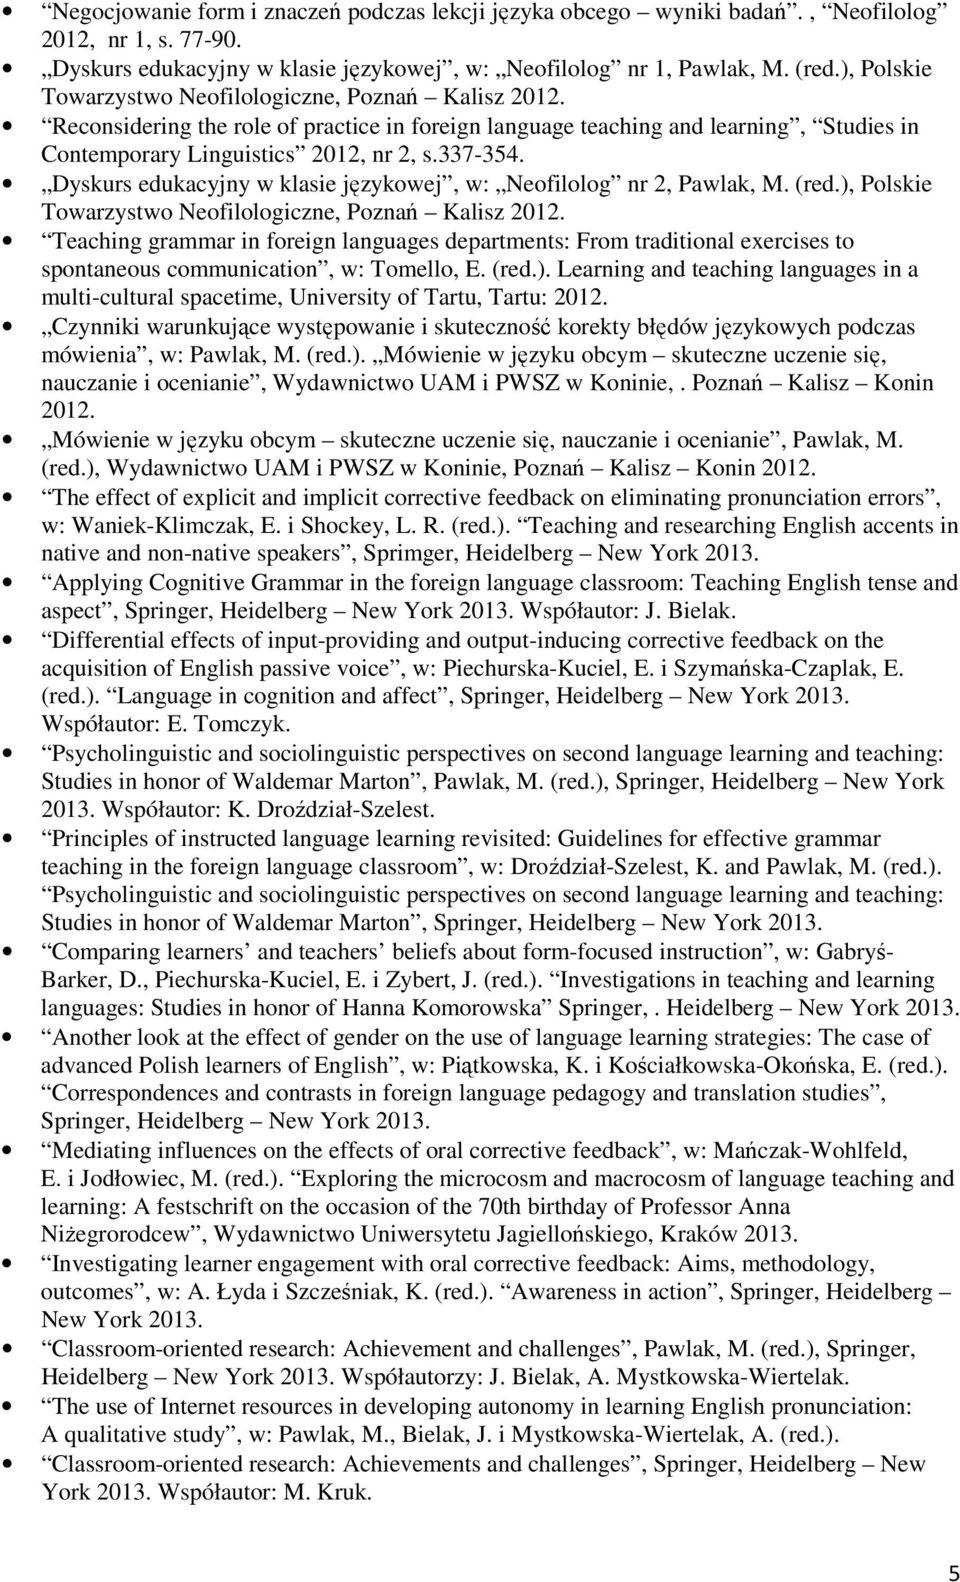 Dyskurs edukacyjny w klasie językowej, w: Neofilolog nr 2, Pawlak, M. (red.), Polskie Towarzystwo Neofilologiczne, Poznań Kalisz 2012.